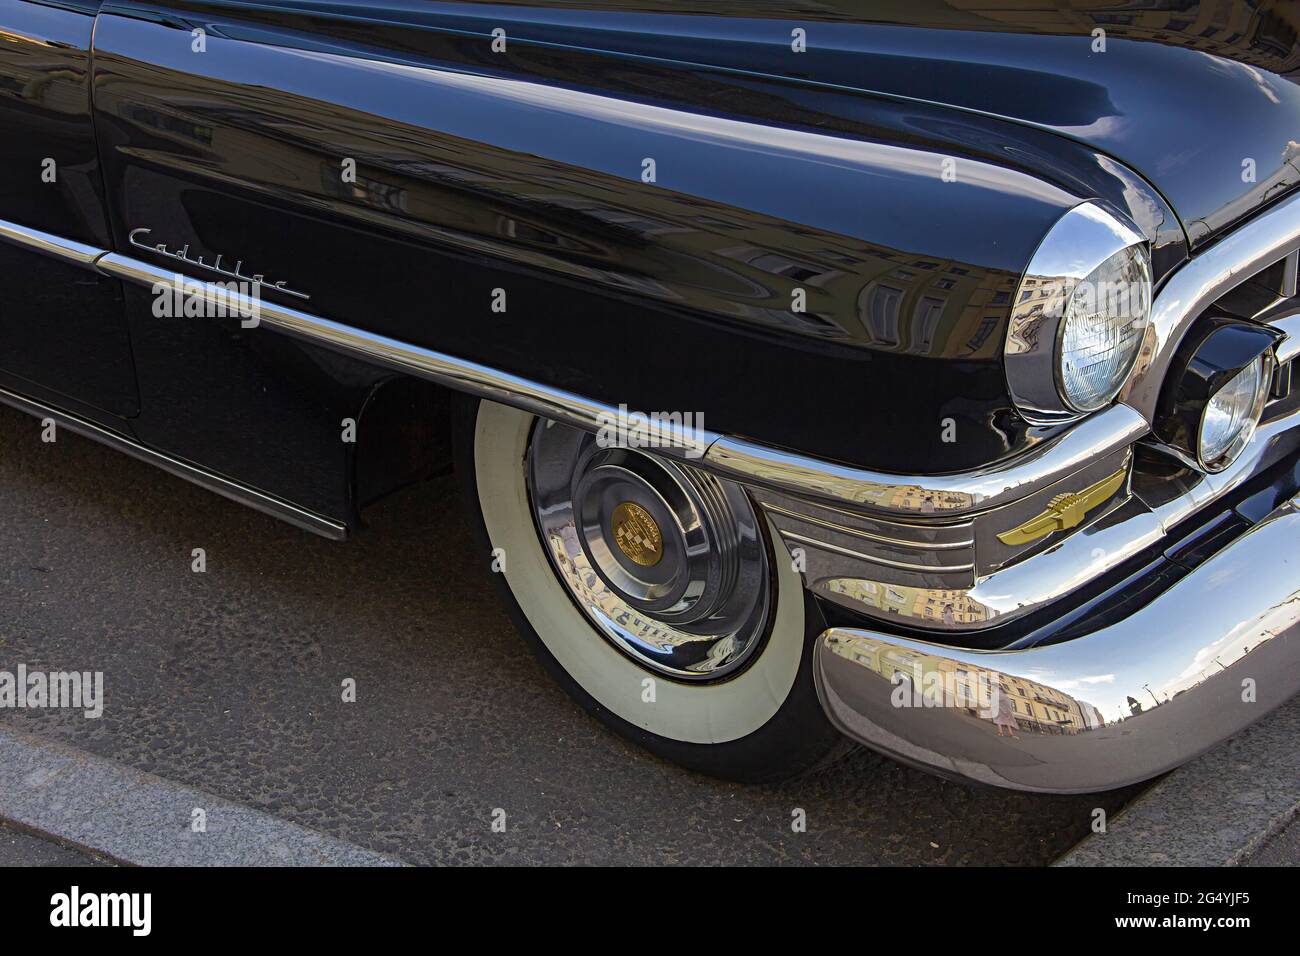 ST. PETERSBURG, RUSSLAND - 9. JUNI 2021: Cadillac Coupe Deville 1950er Jahre, schwarzer Executive-Wagen, alter klassischer Retro-Wagen, Ära des großen gatsby, Stadtreflexion Stockfoto